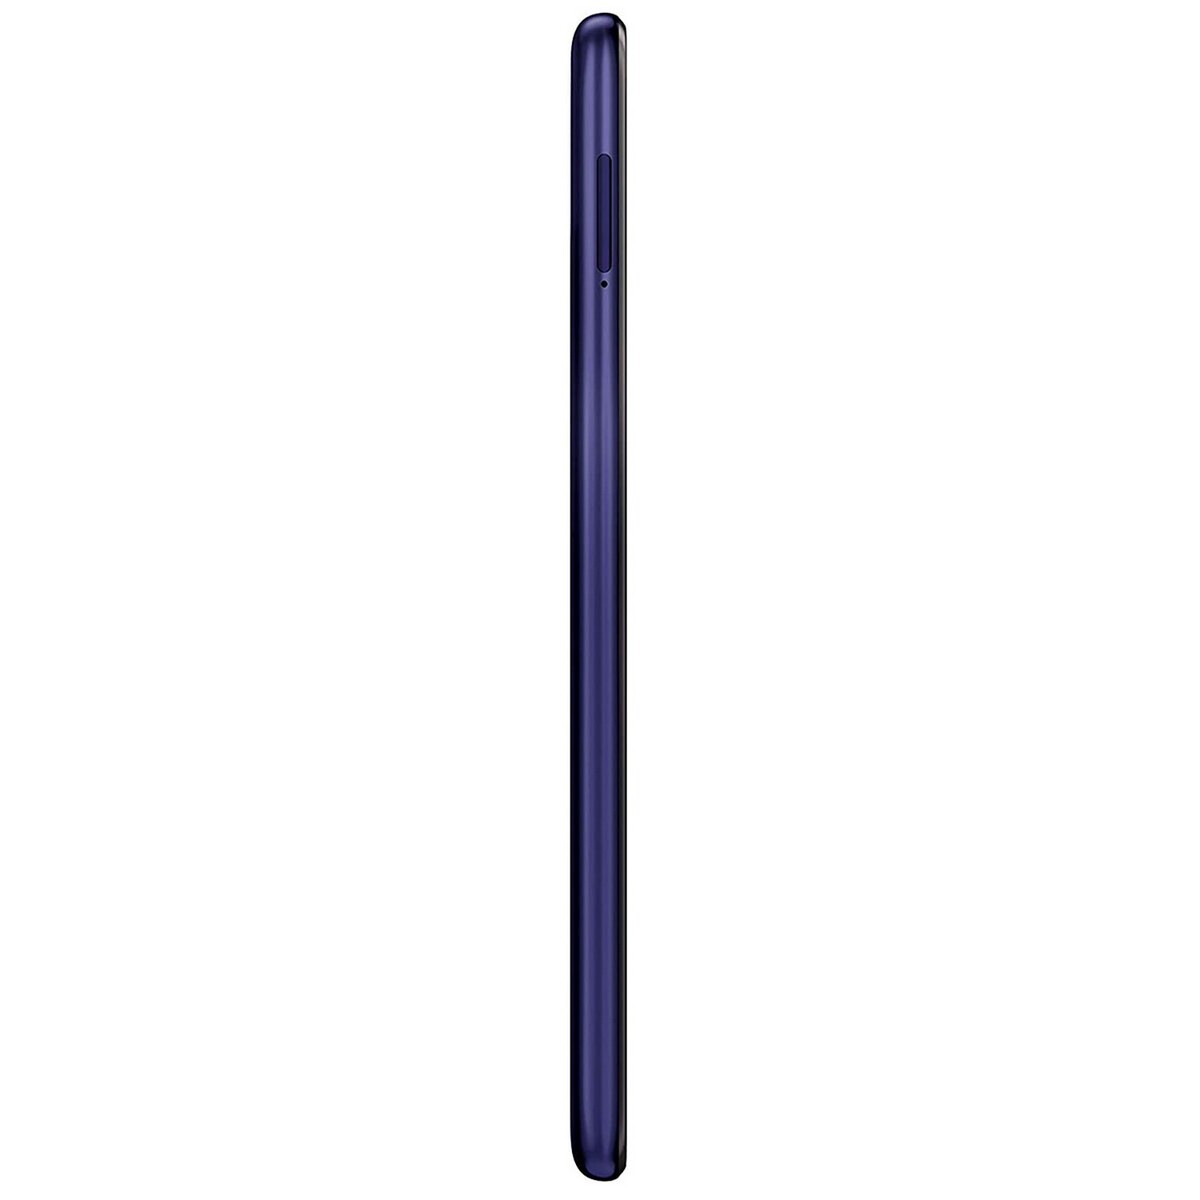 Samsung Galaxy M30 3GB/32GB Blue